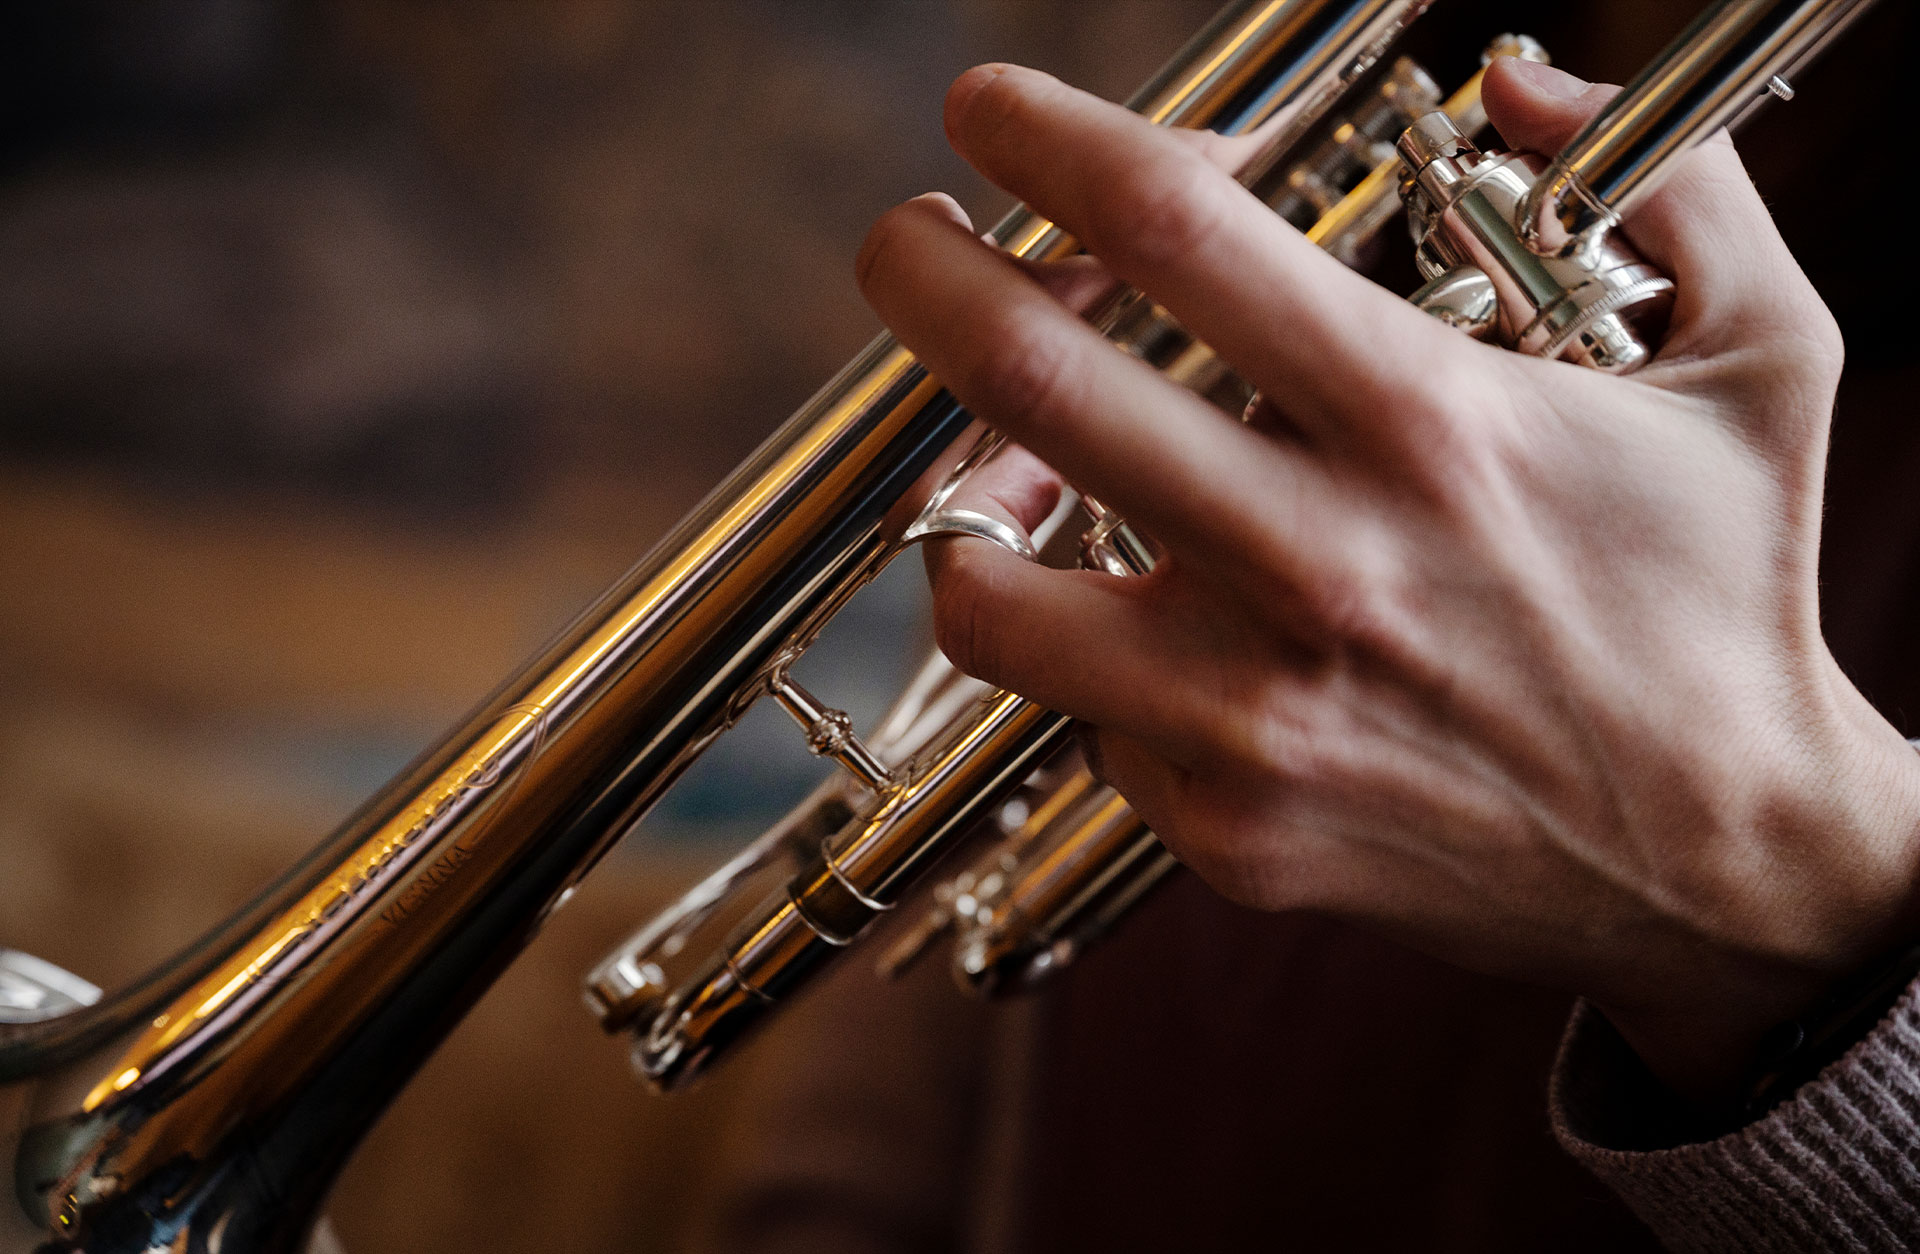 Urškas hand i närbild håller i en trumpet.